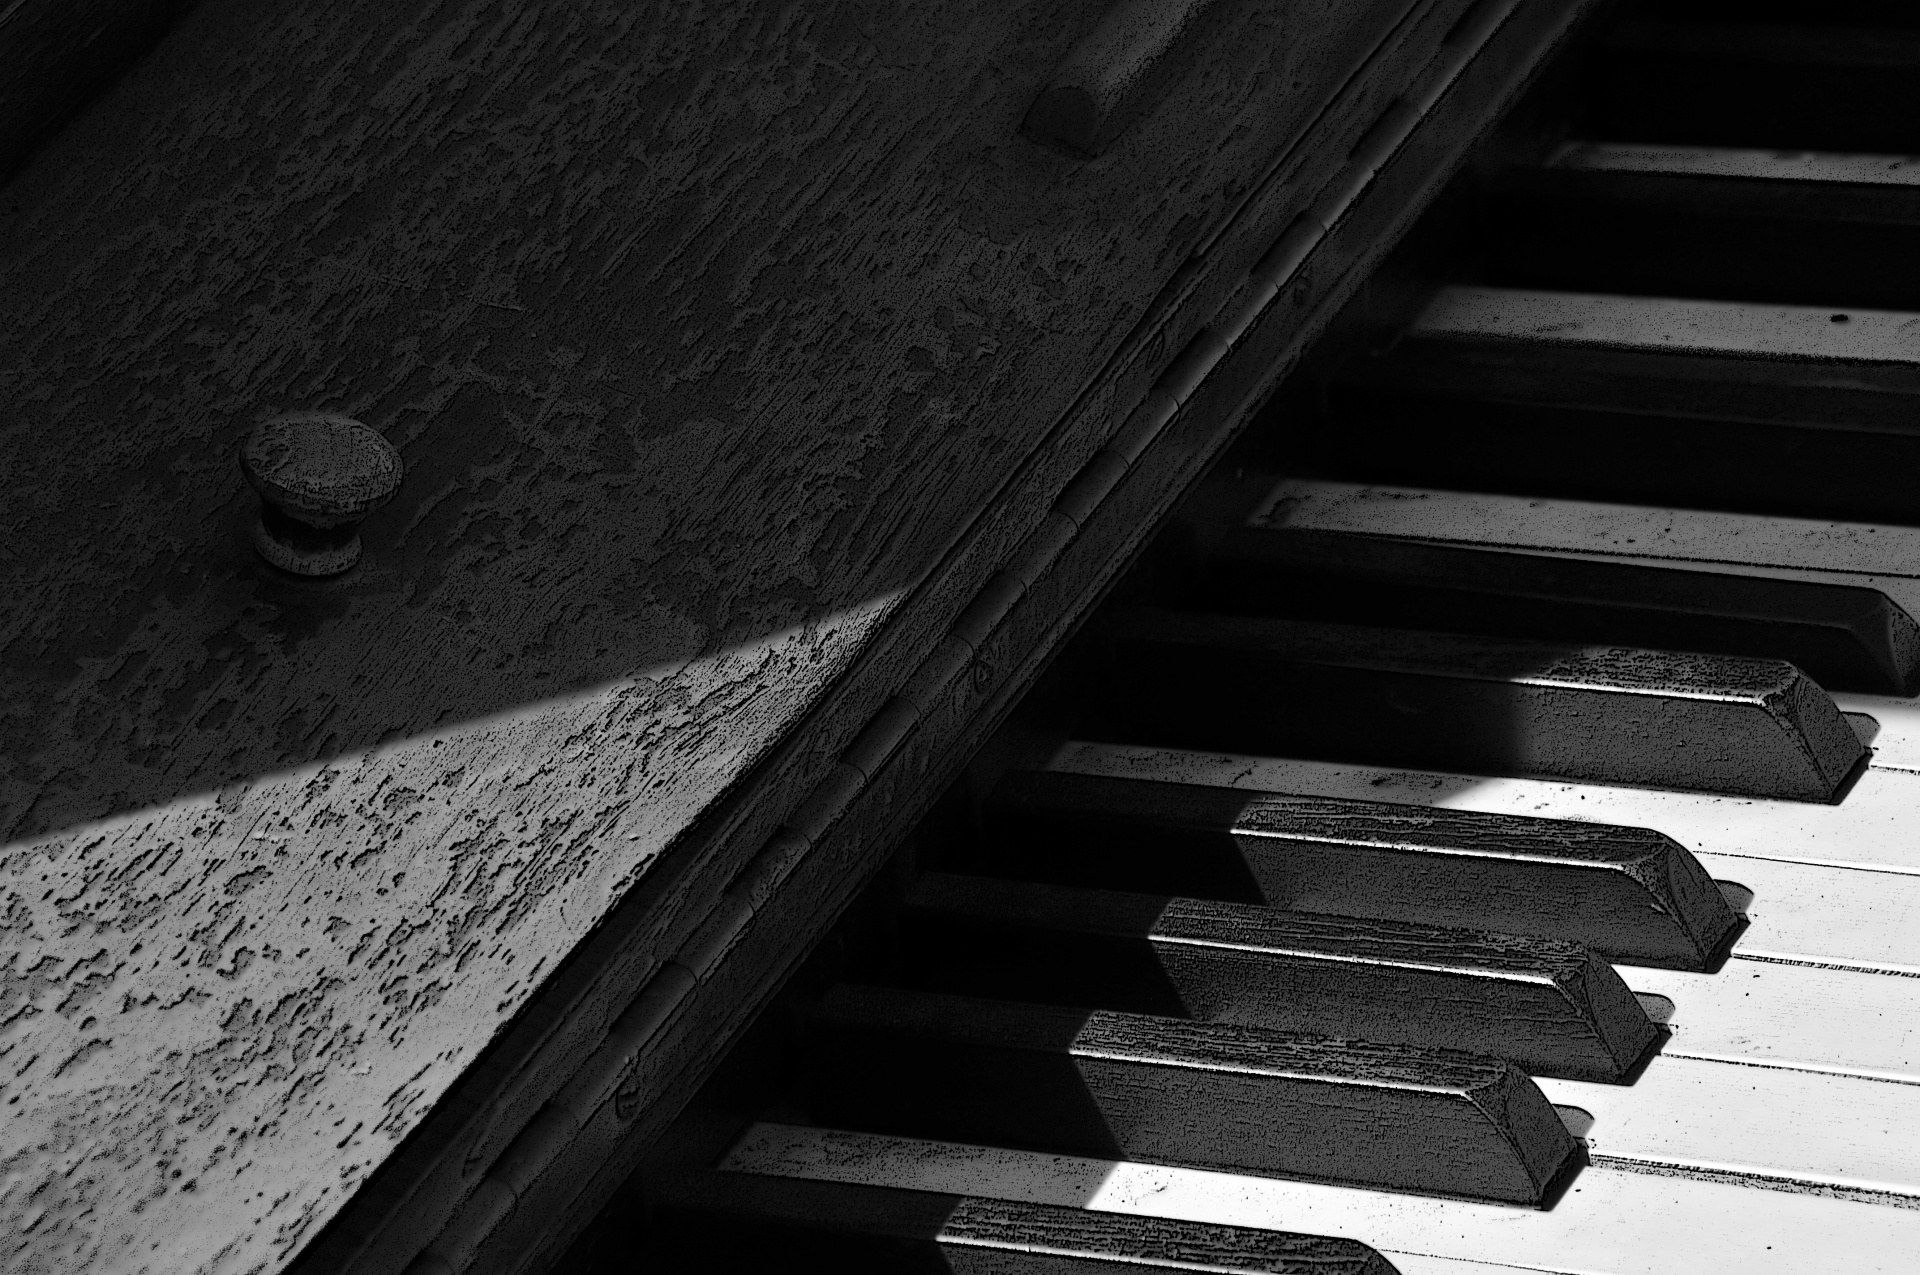 piano key keys free photo